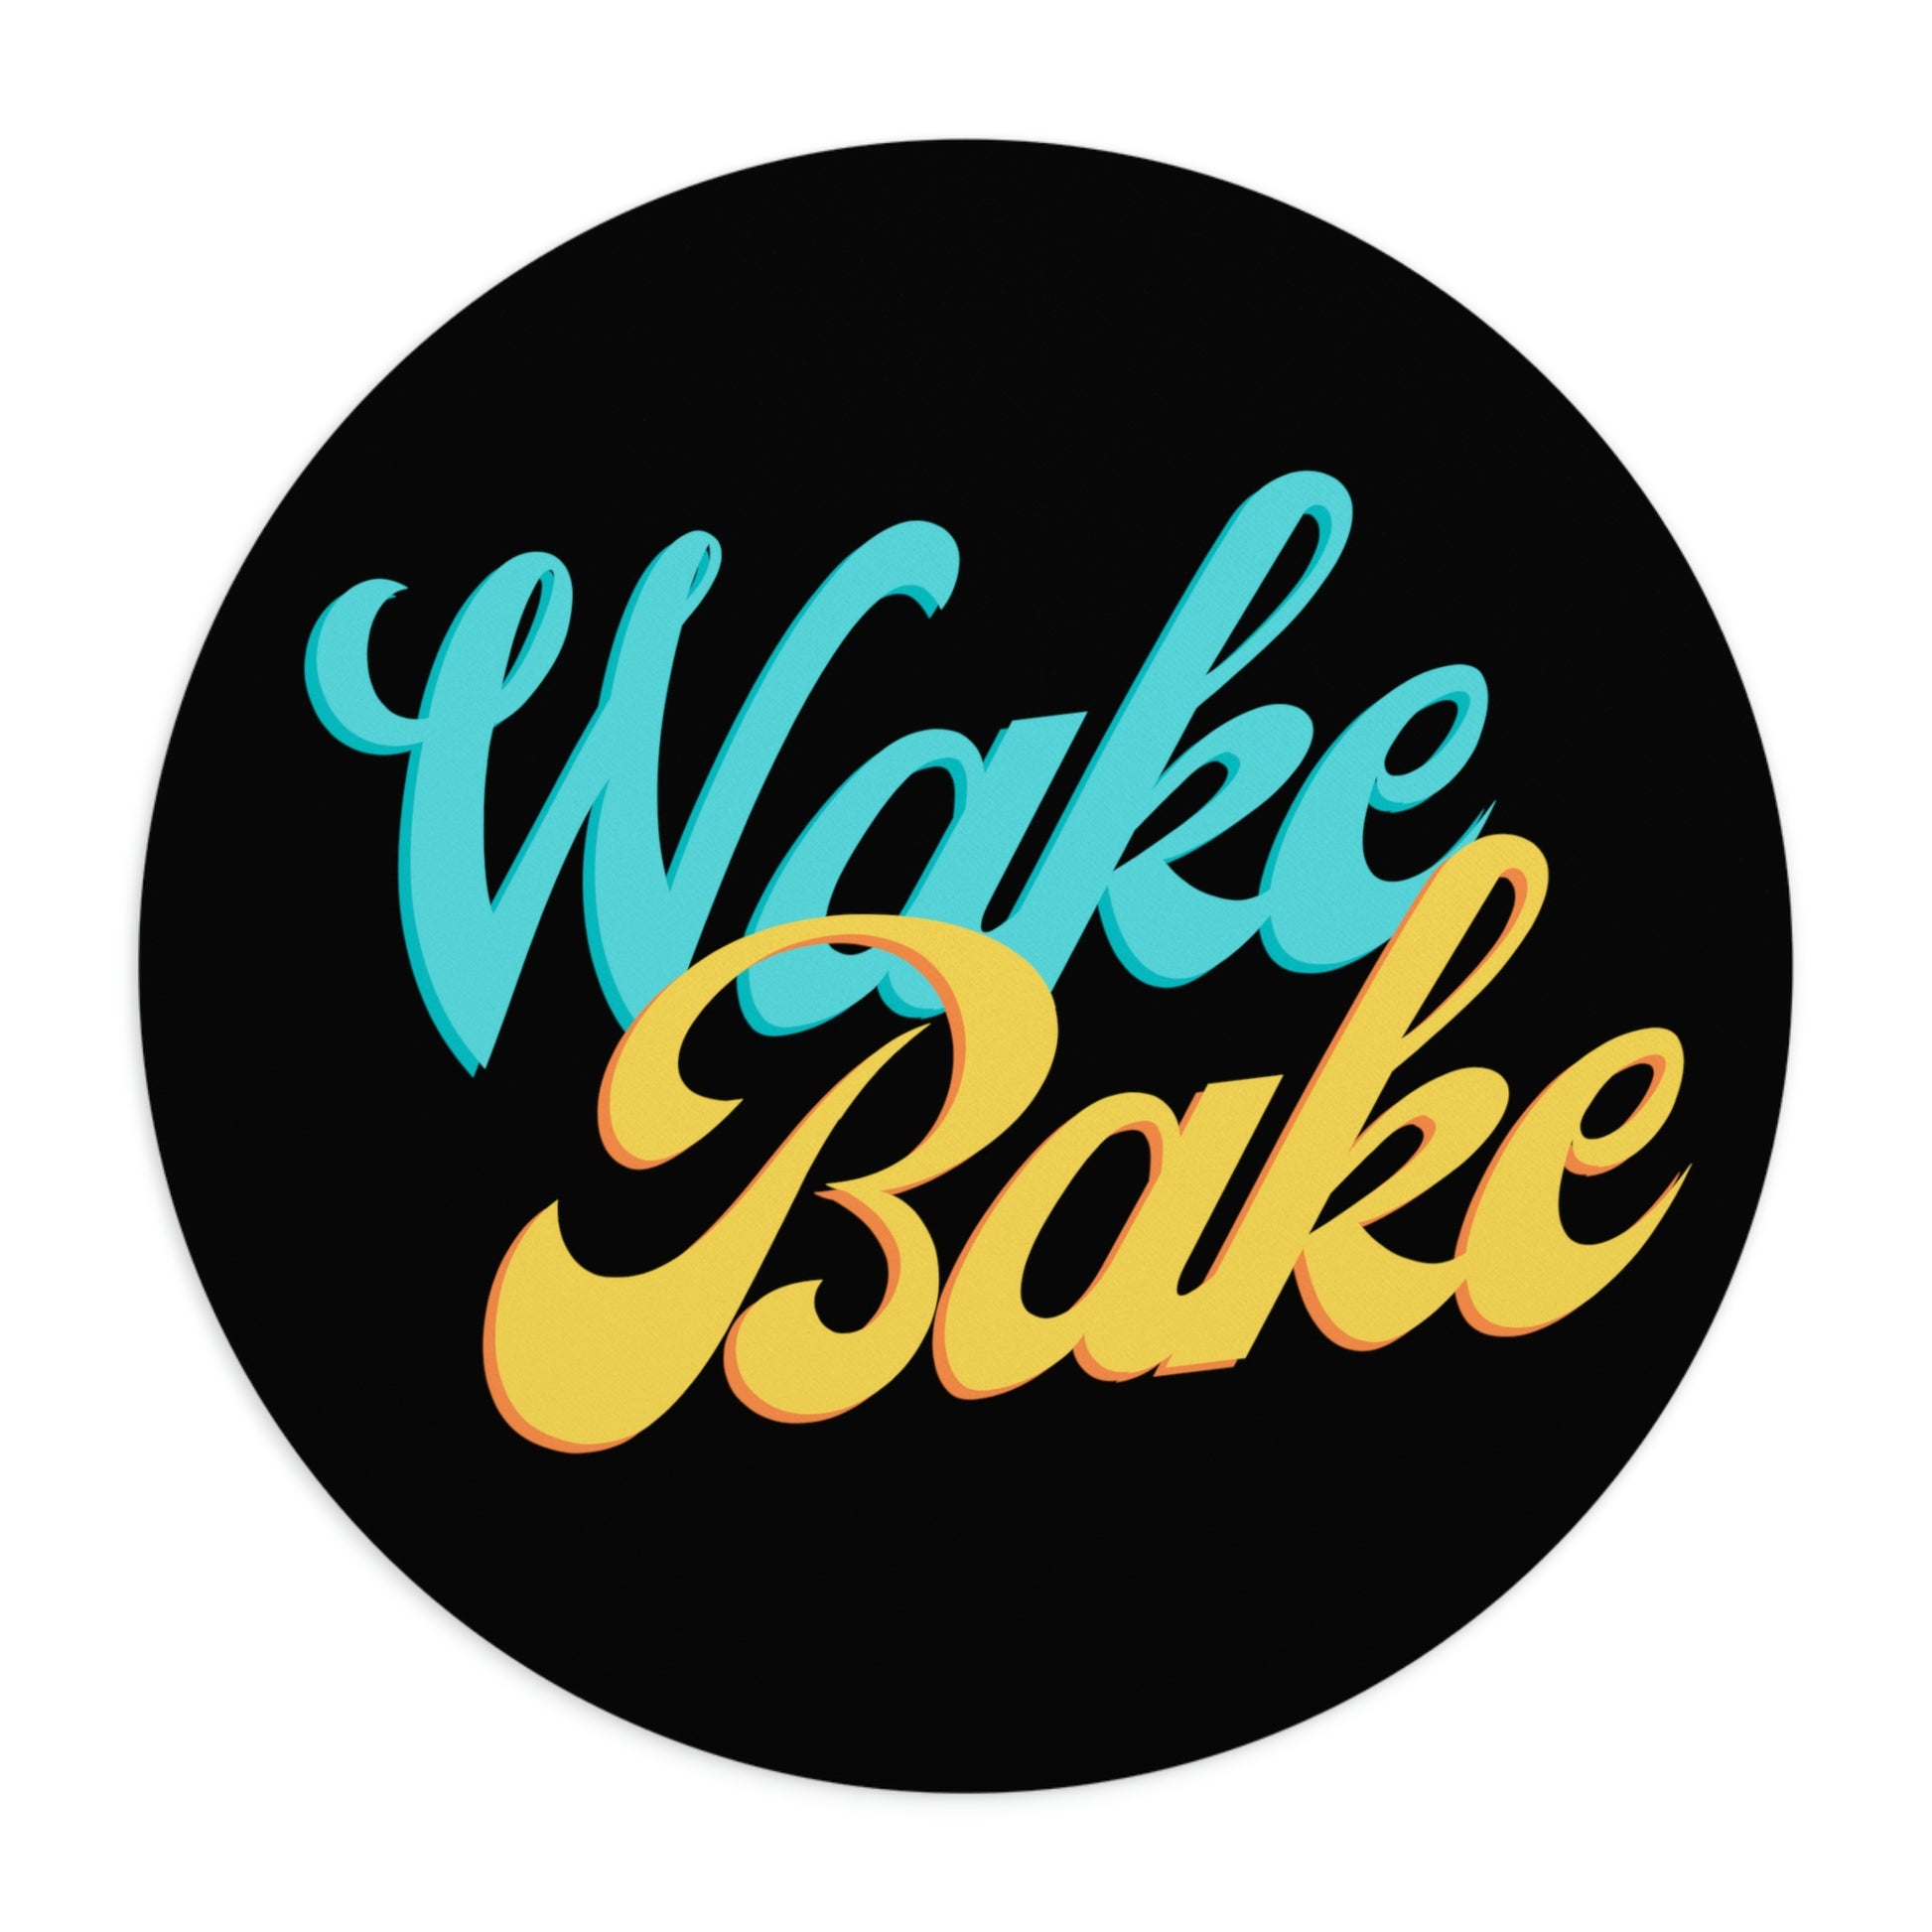 a black wake and bake circular mouse pad 